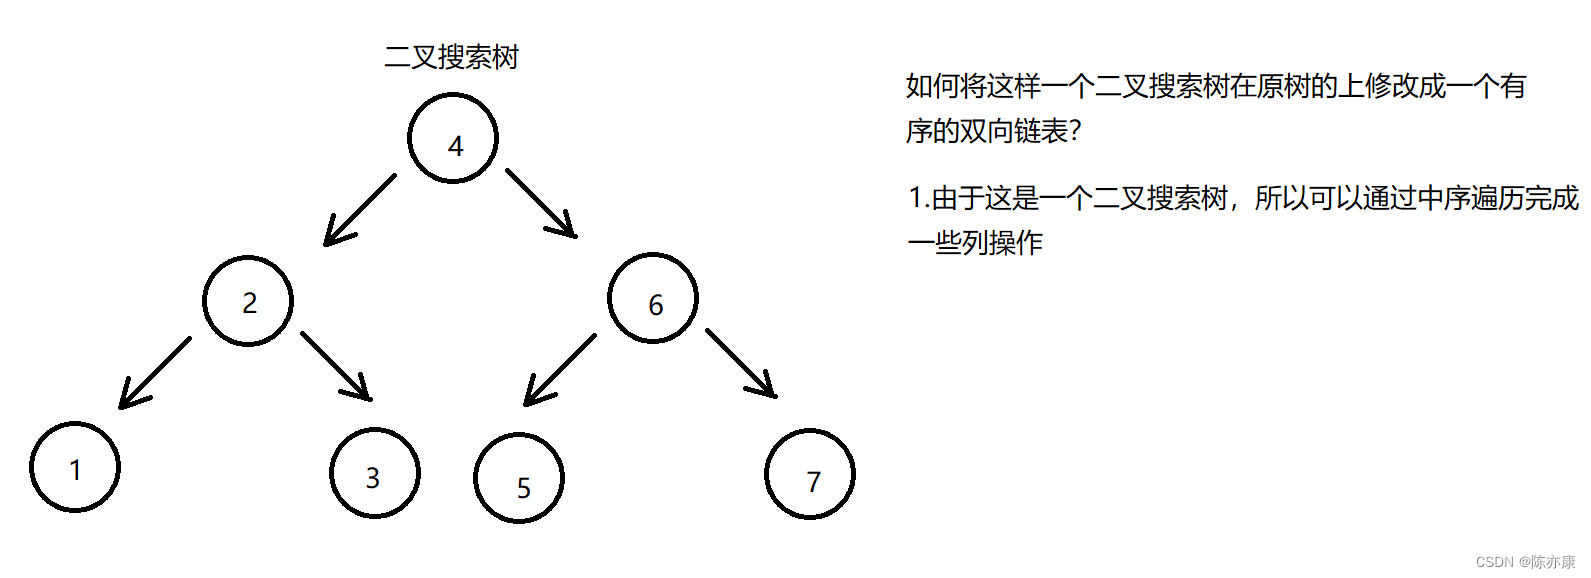 如何将二叉搜索树转化为一个有序的双向链表（原树上修改）